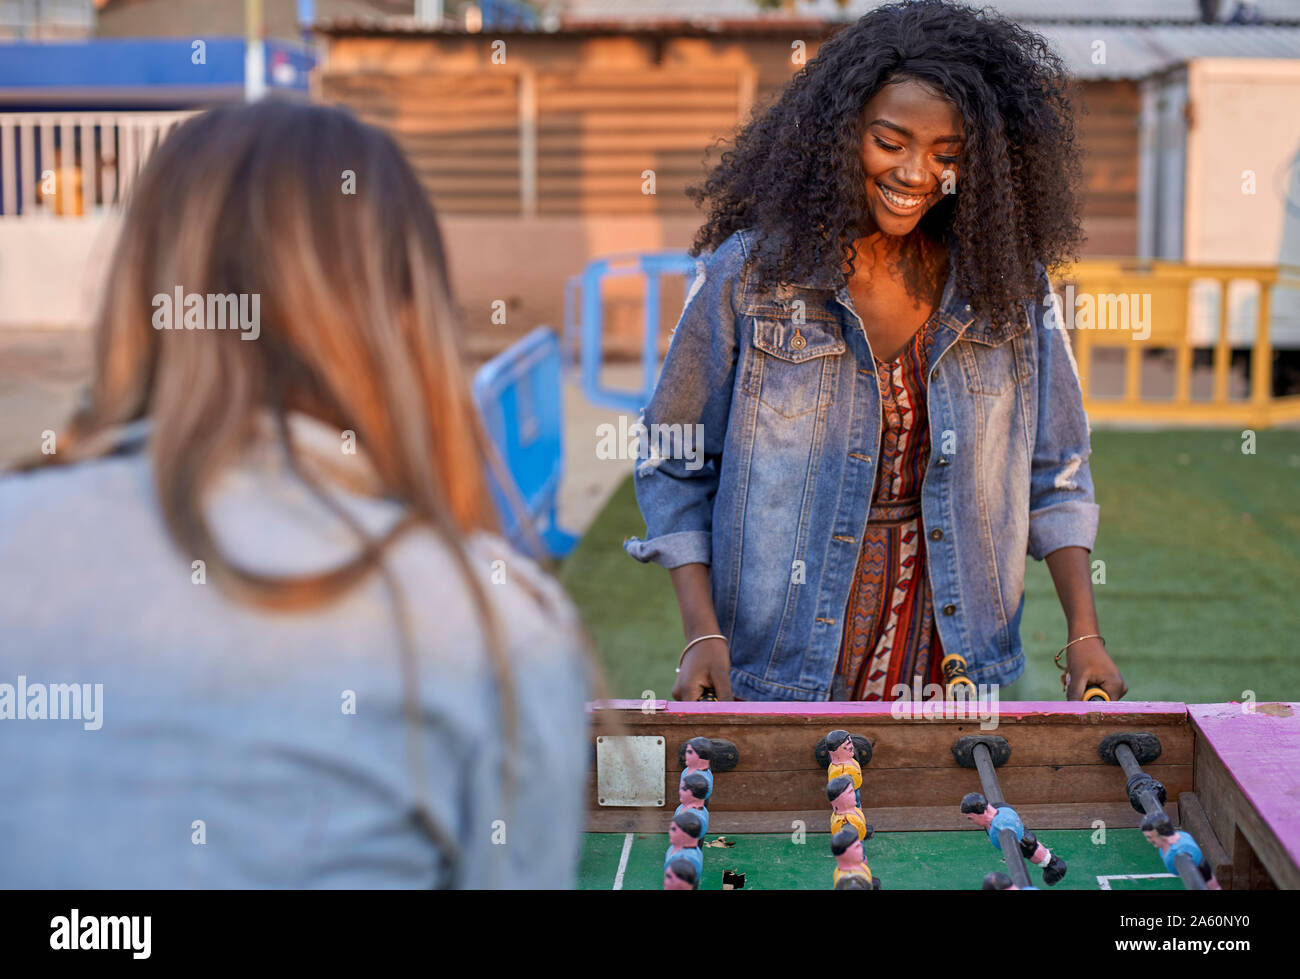 Portrait von glücklichen jungen Frau spielen Tischfußball mit ihrem Freund Stockfoto